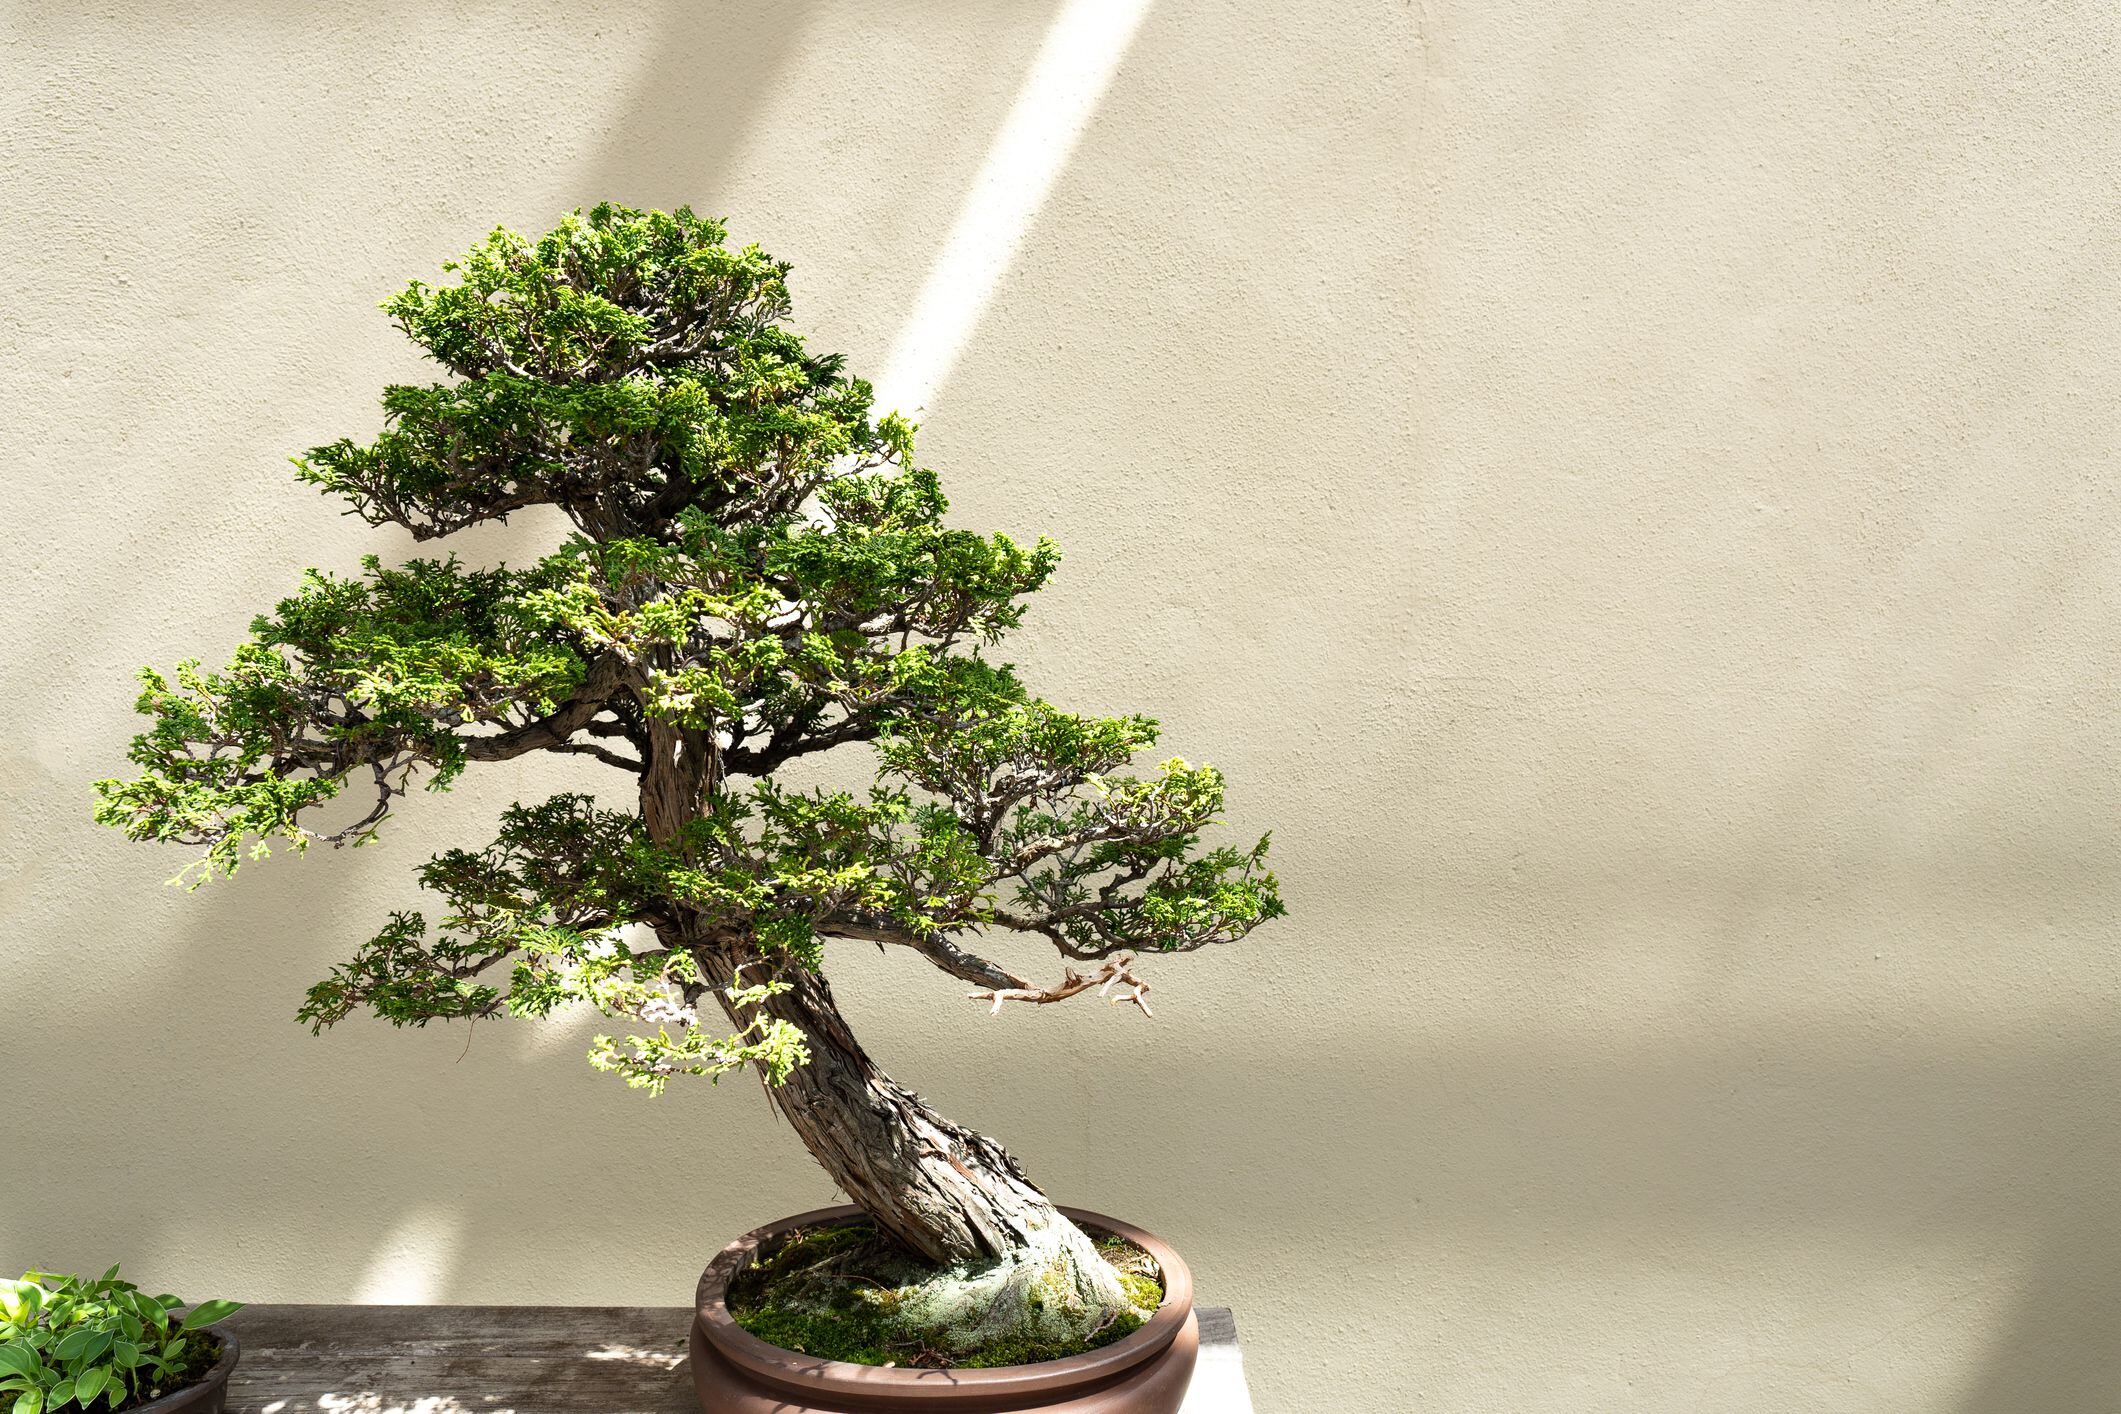 Qué herramientas necesito para modelar y cuidar mi bonsái?